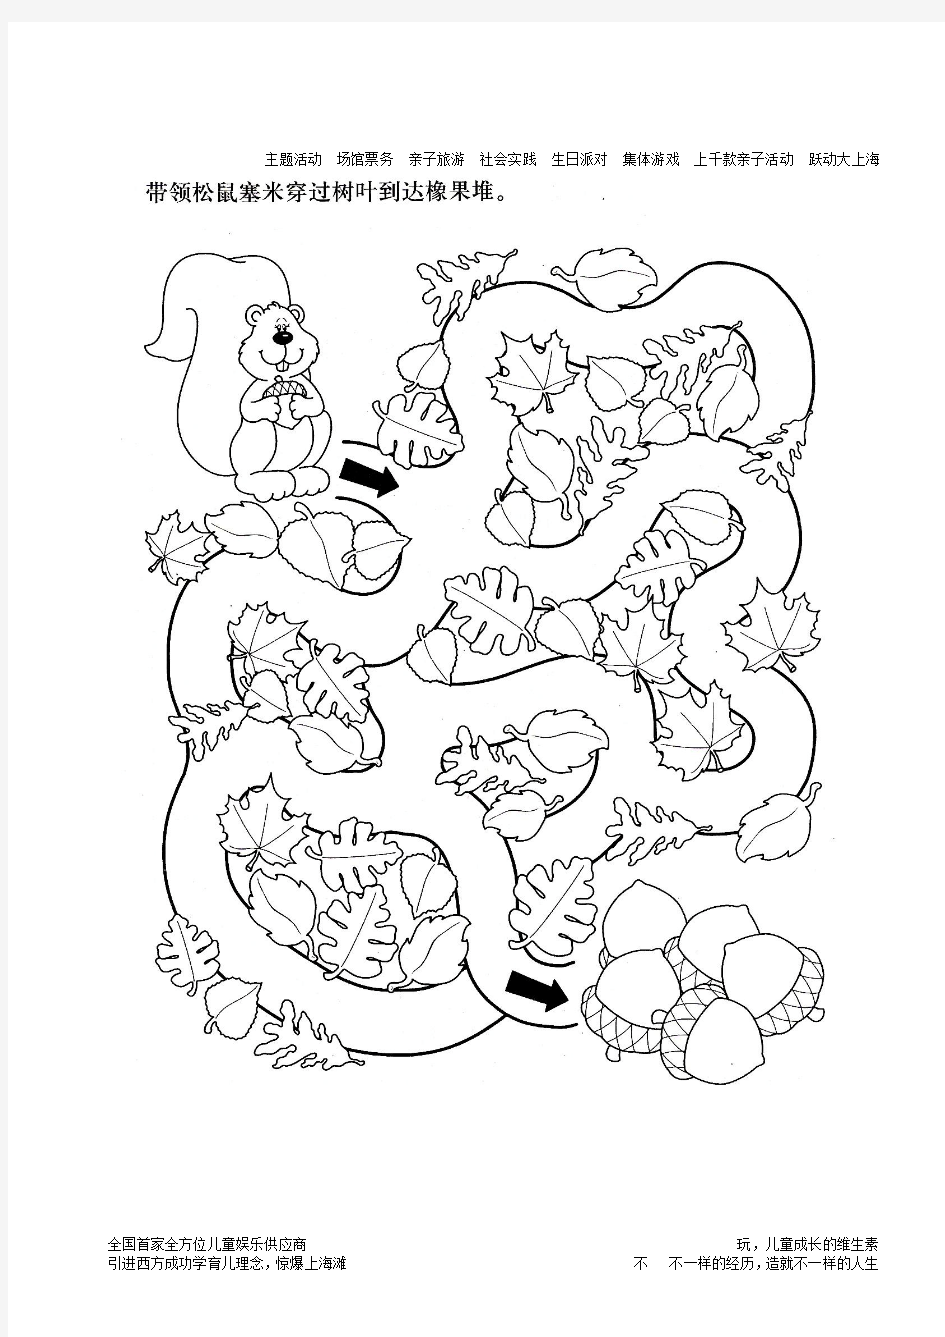 儿童迷宫游戏 高清打印—幼儿园少儿儿童迷宫图)15页)